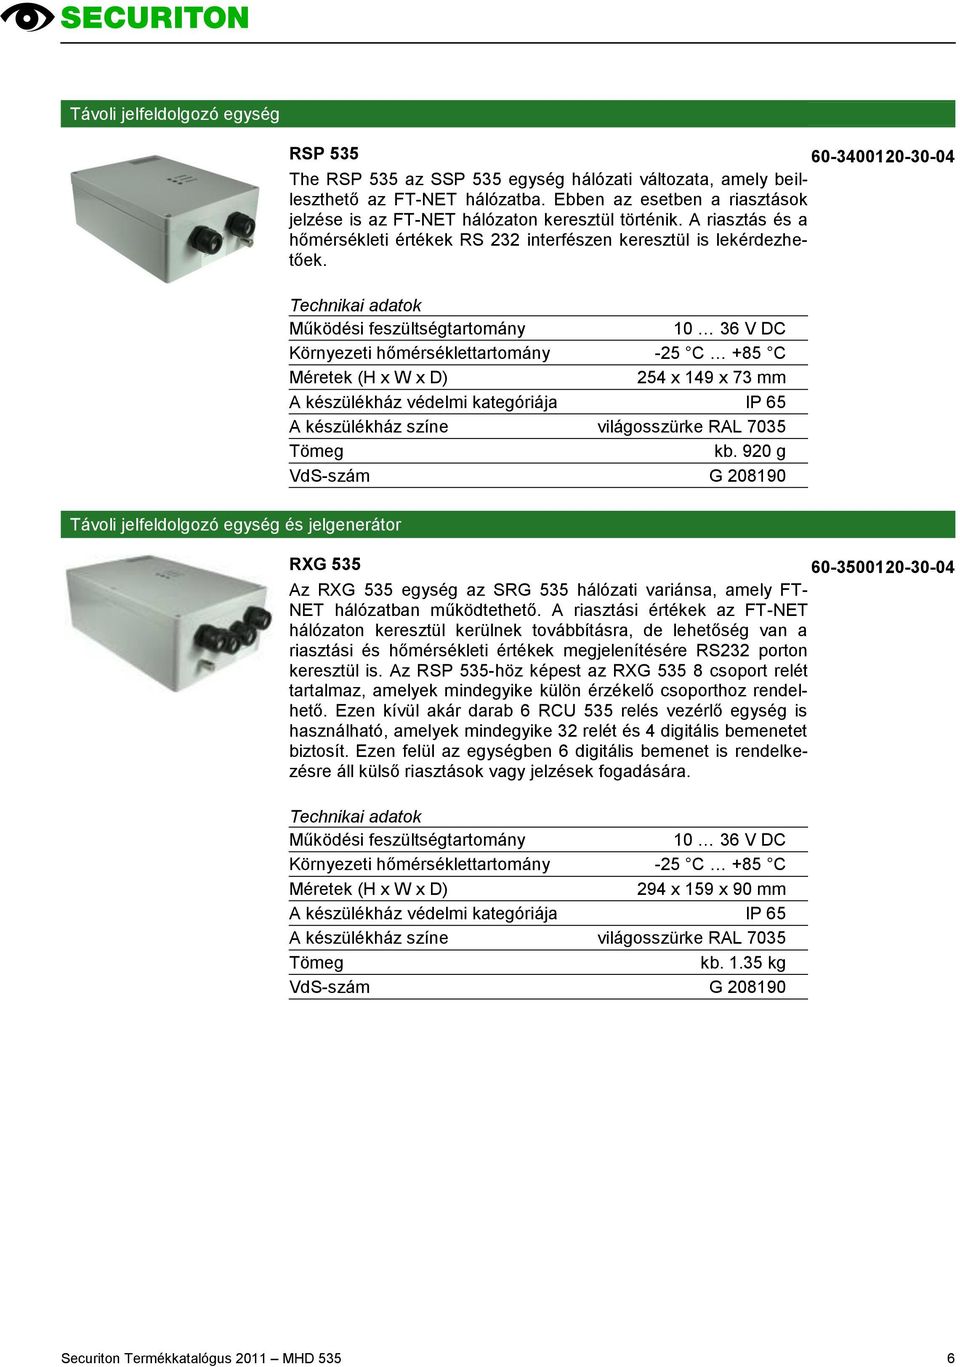 10 36 V DC Környezeti hőmérséklettartomány -25 C +85 C 254 x 149 x 73 mm A készülékház színe világosszürke RAL 7035 kb.